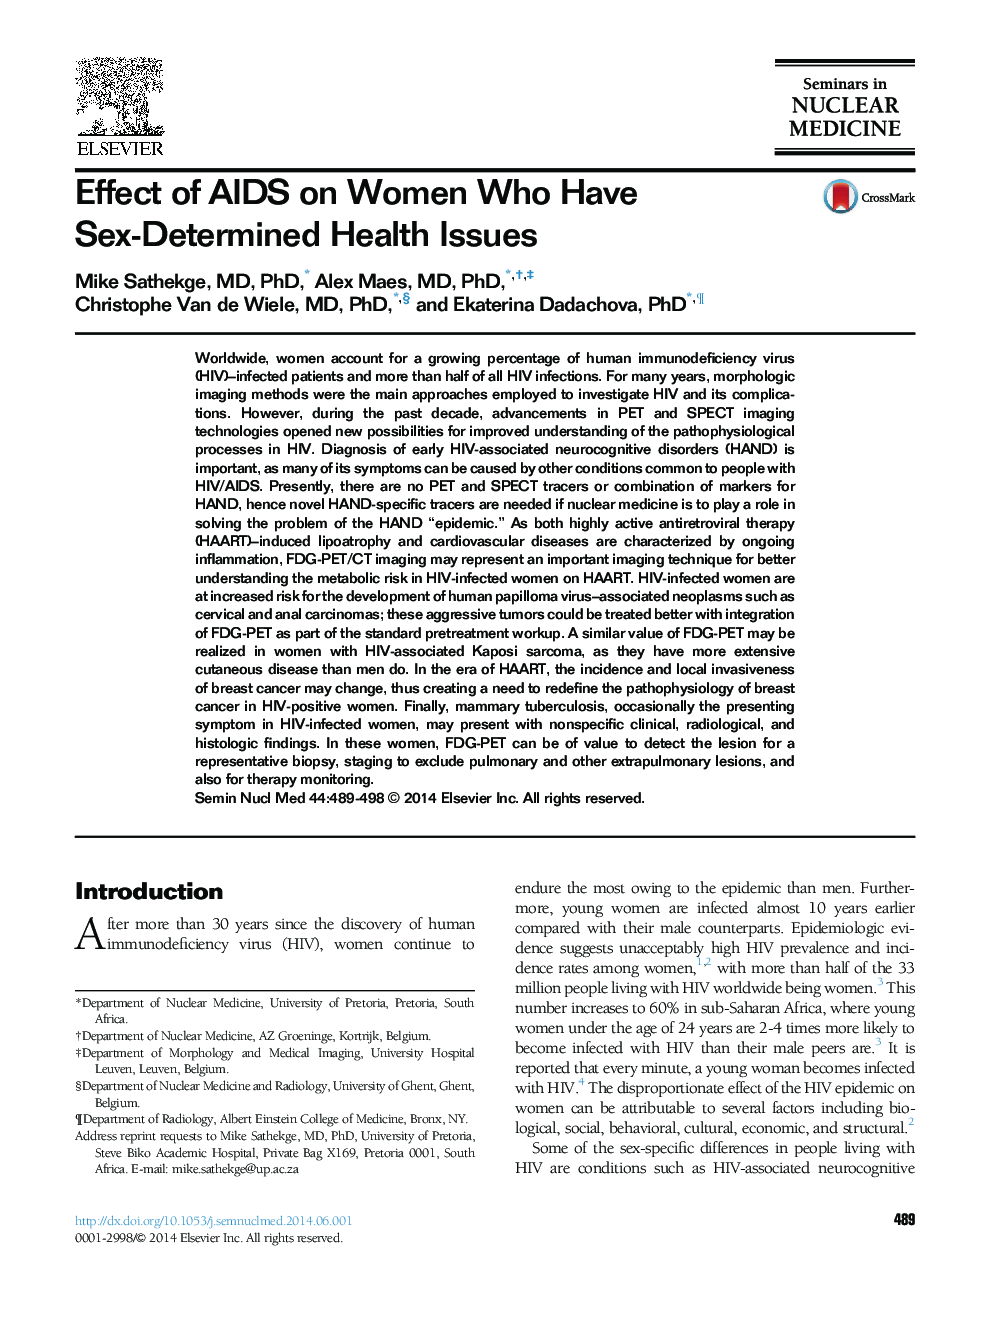 تاثیر ایدز بر زنان که مسائل بهداشتی تعیین شده جنسی دارند 